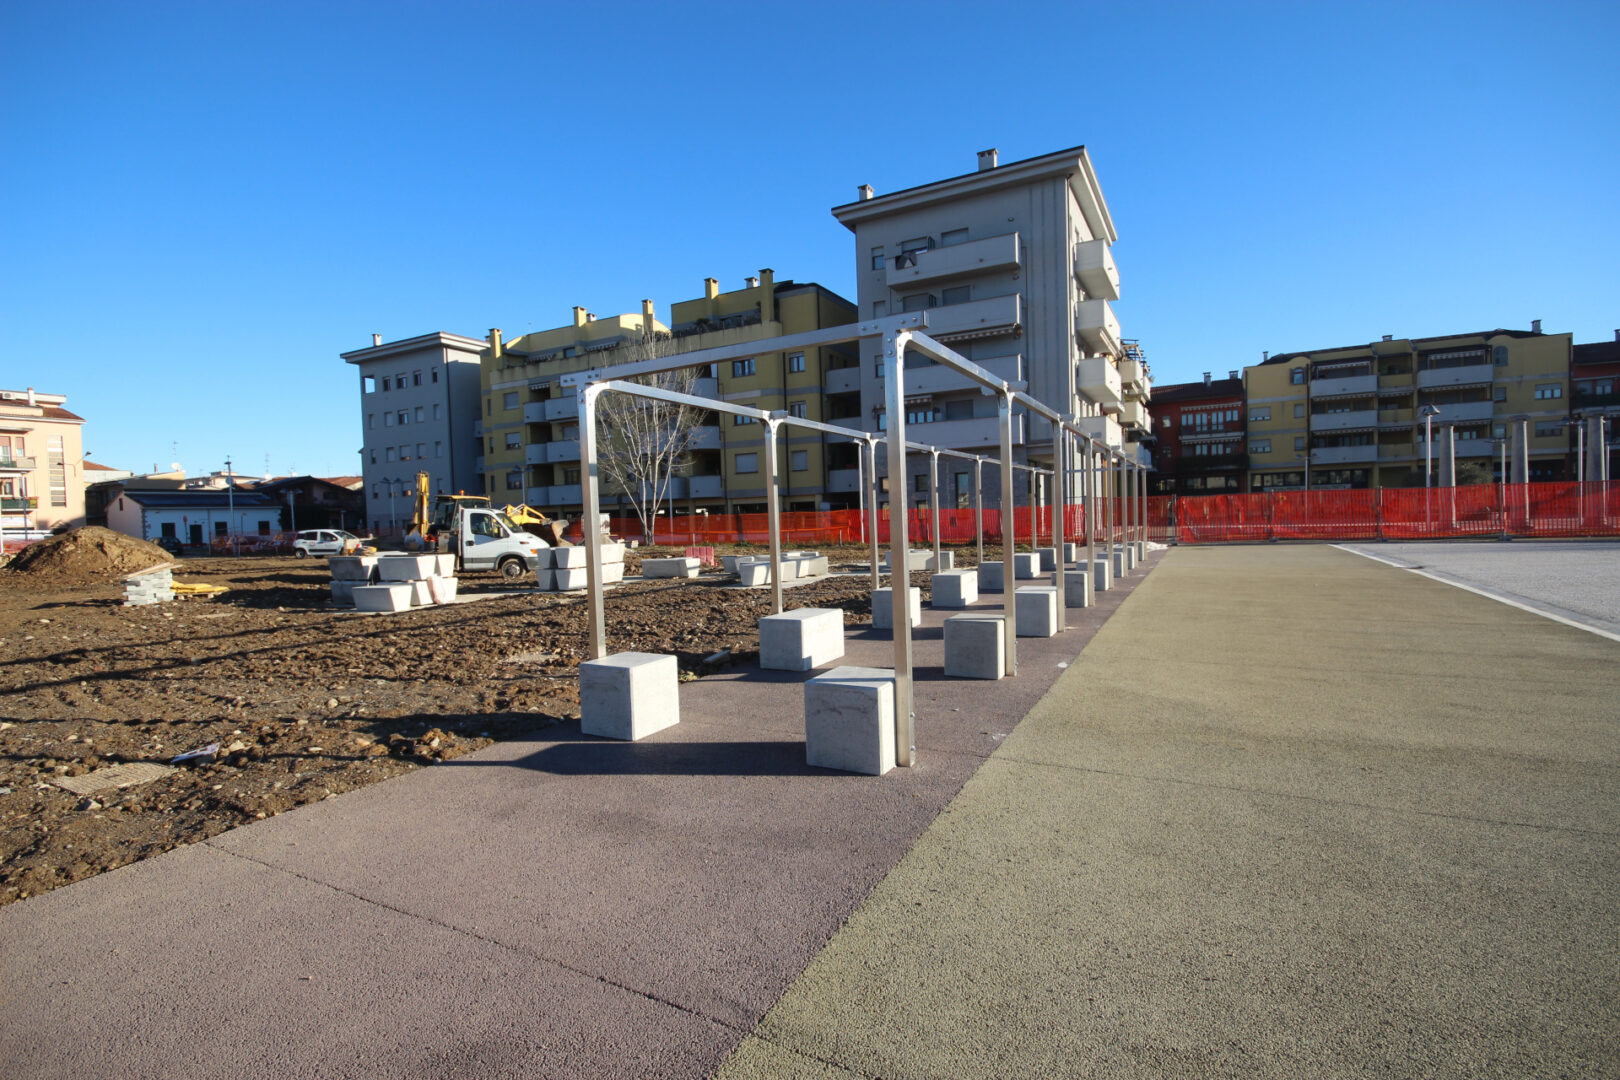 La nuova piazza dello spazio polifunzionale in costruzione